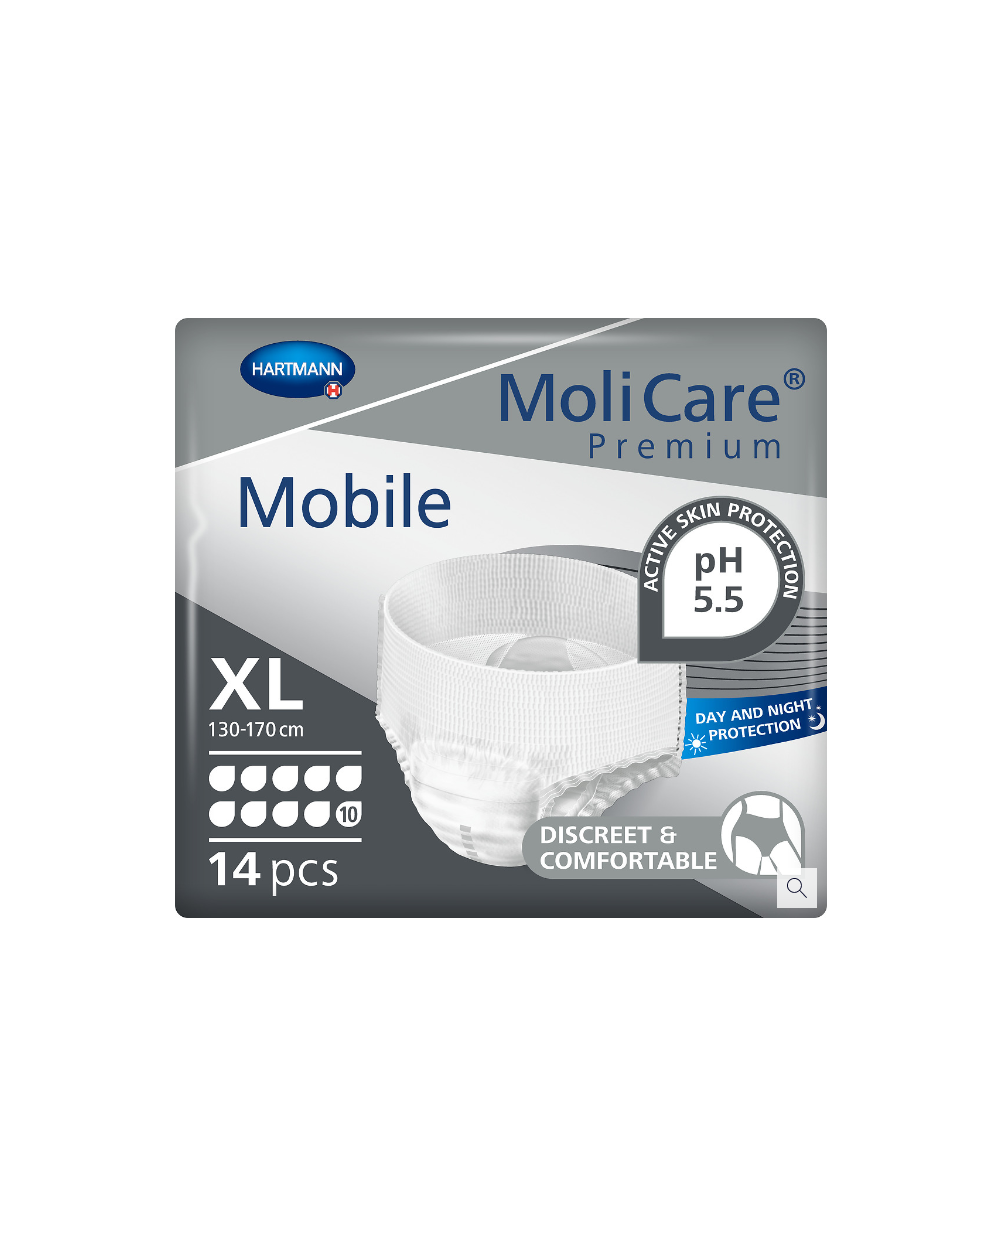 Molicare premium mobile 10d xl